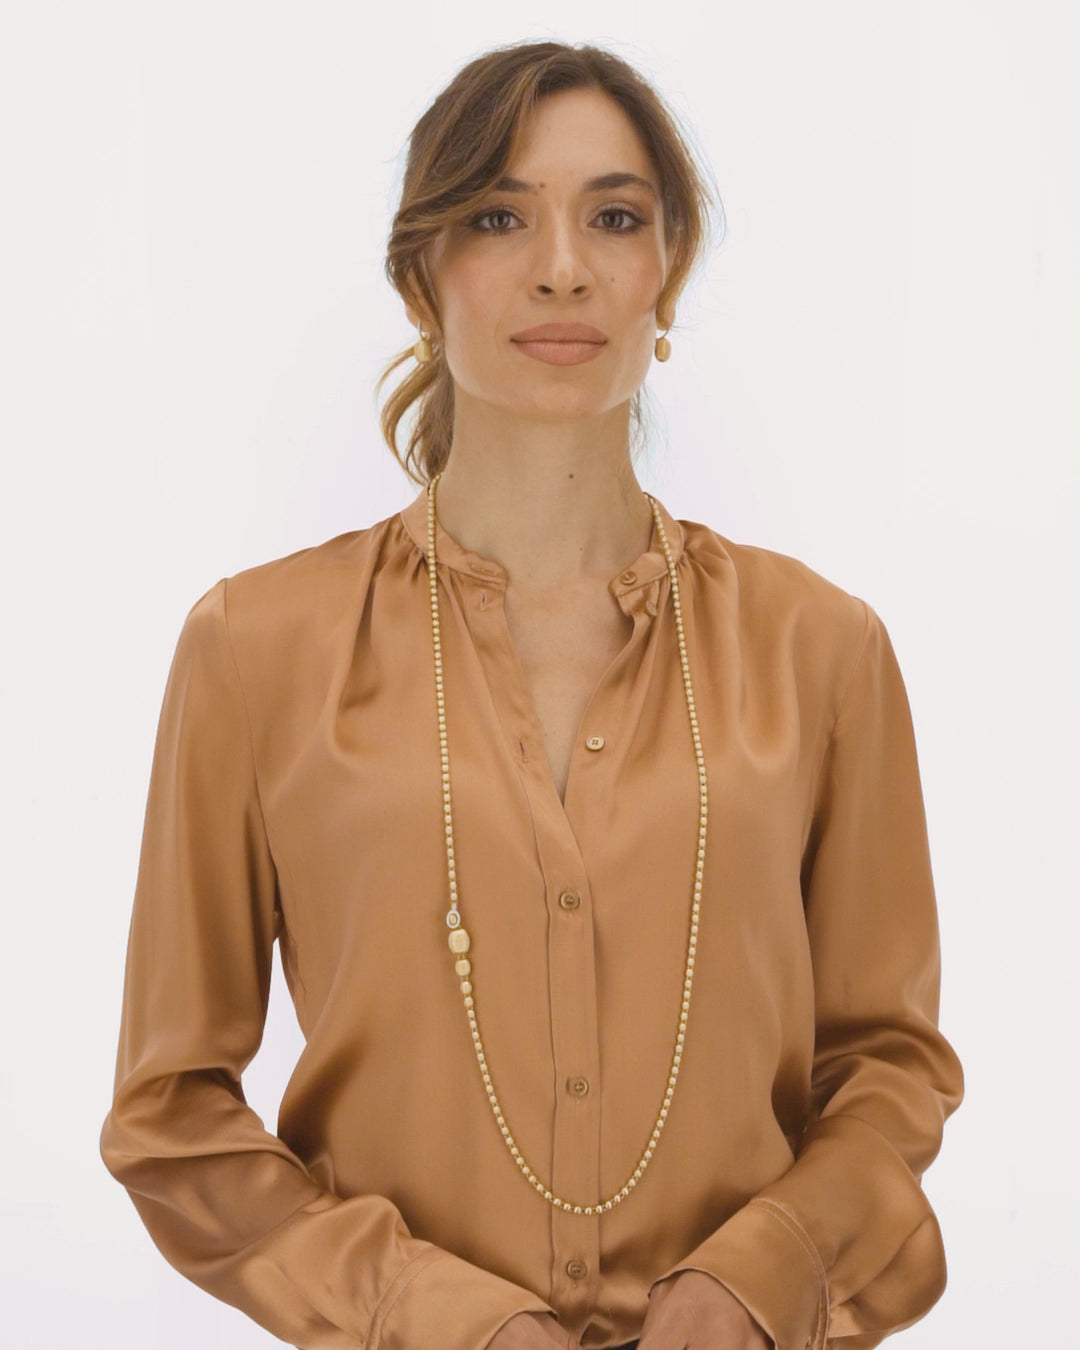 Ikonische wandelbare Halskette "IVY" slim mit handgravierten Boules aus Gelbgold und Diamanten (lang)